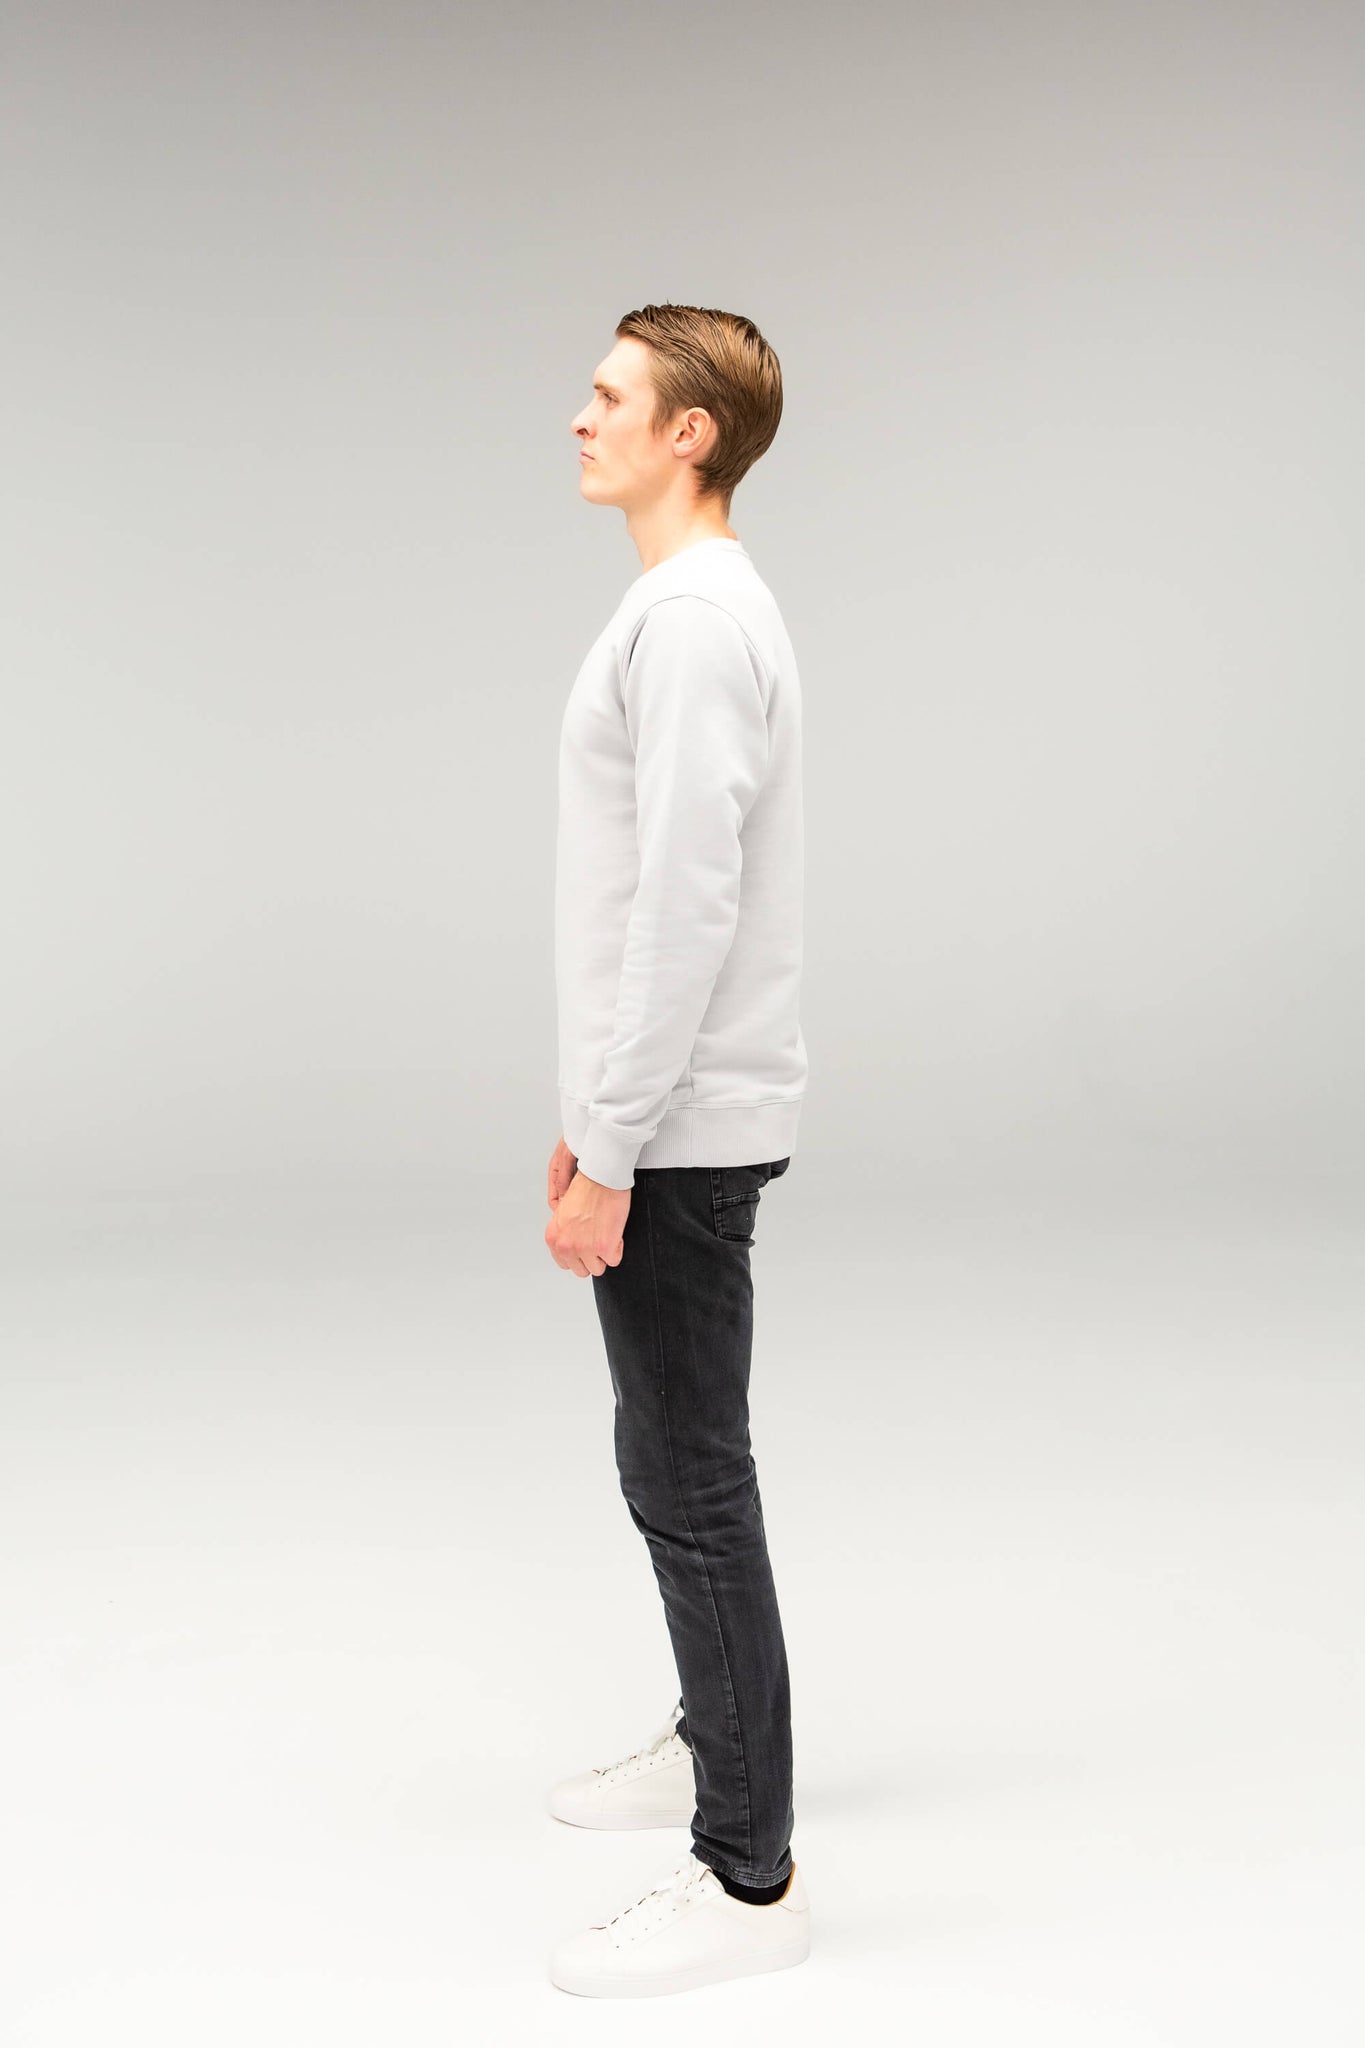 The Tall Sweatshirt - TALLFITS - Grauer Sweater für lange Männer ab 2 Meter Seitenansicht Modell